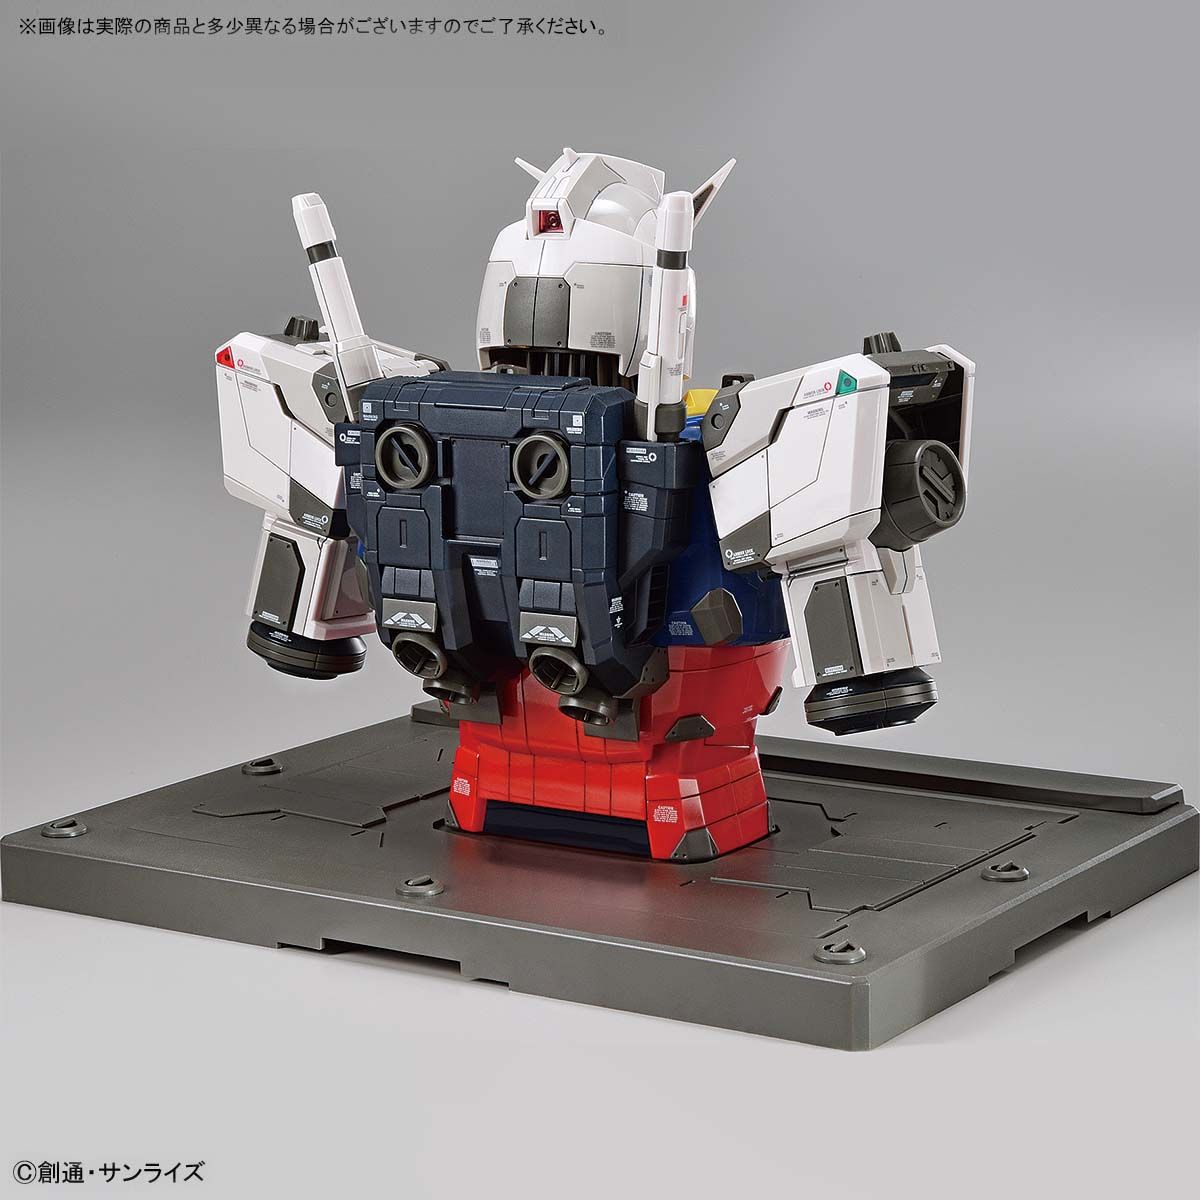 1/48 Scale Model RX-78F00 Gundam(Bust Model)